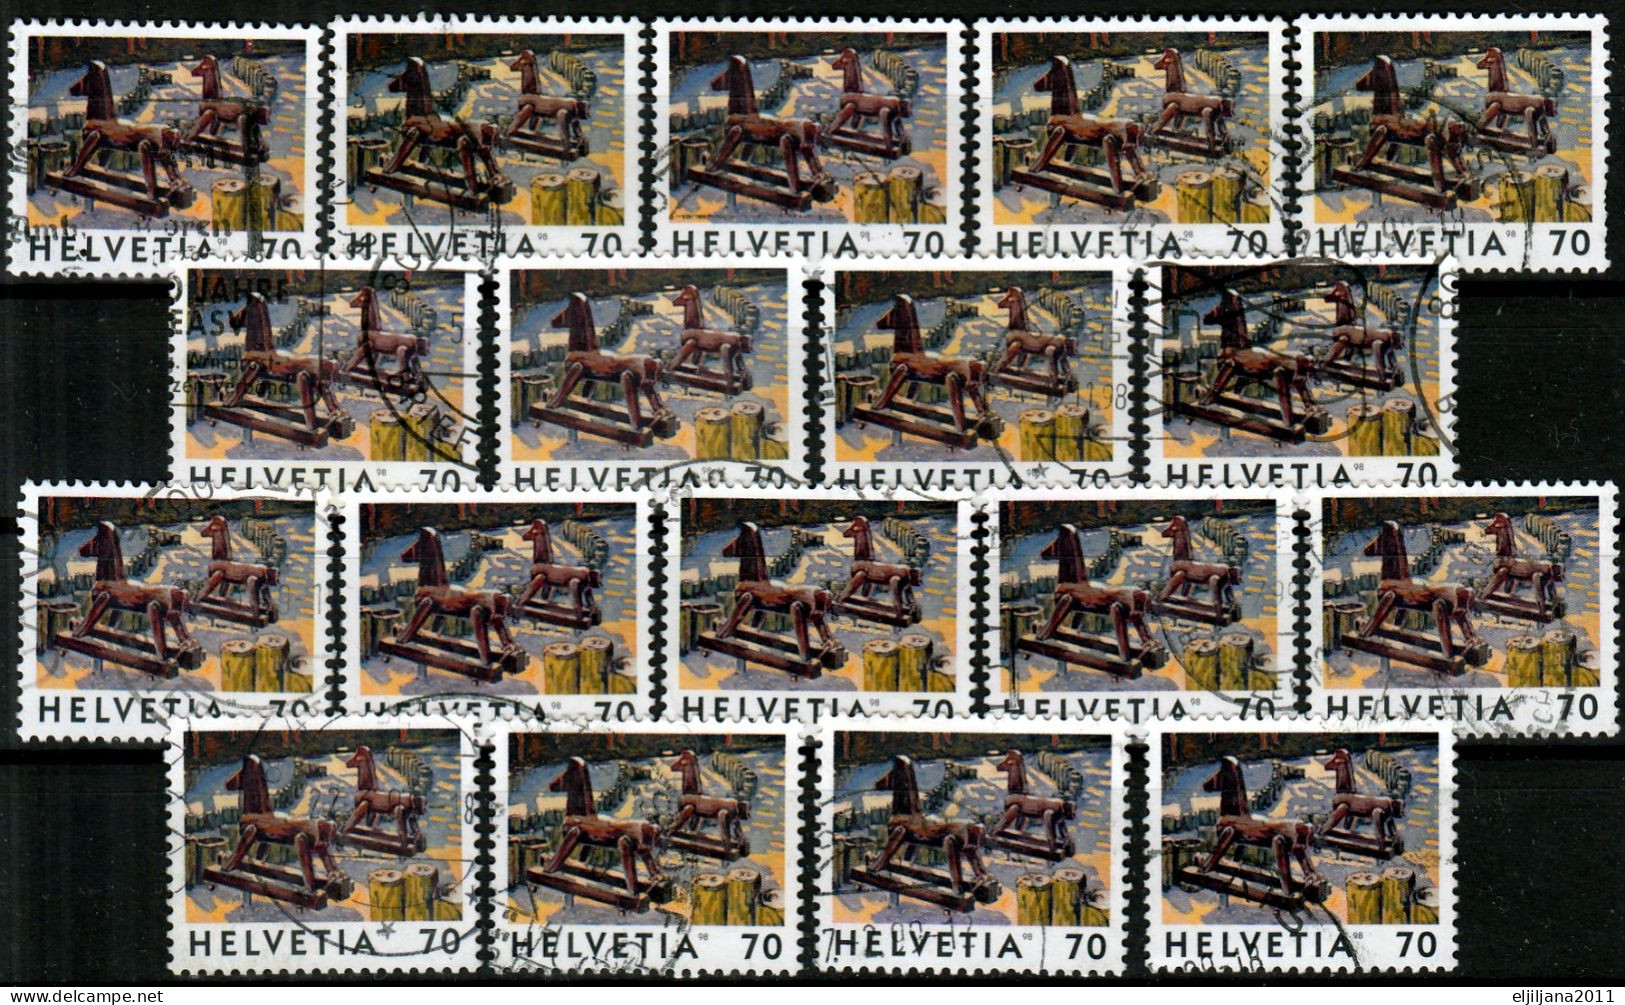 Switzerland / Helvetia / Schweiz / Suisse 1998 ⁕ Deux Chevaux Mi.1646 ⁕ 18v Used - Gebraucht